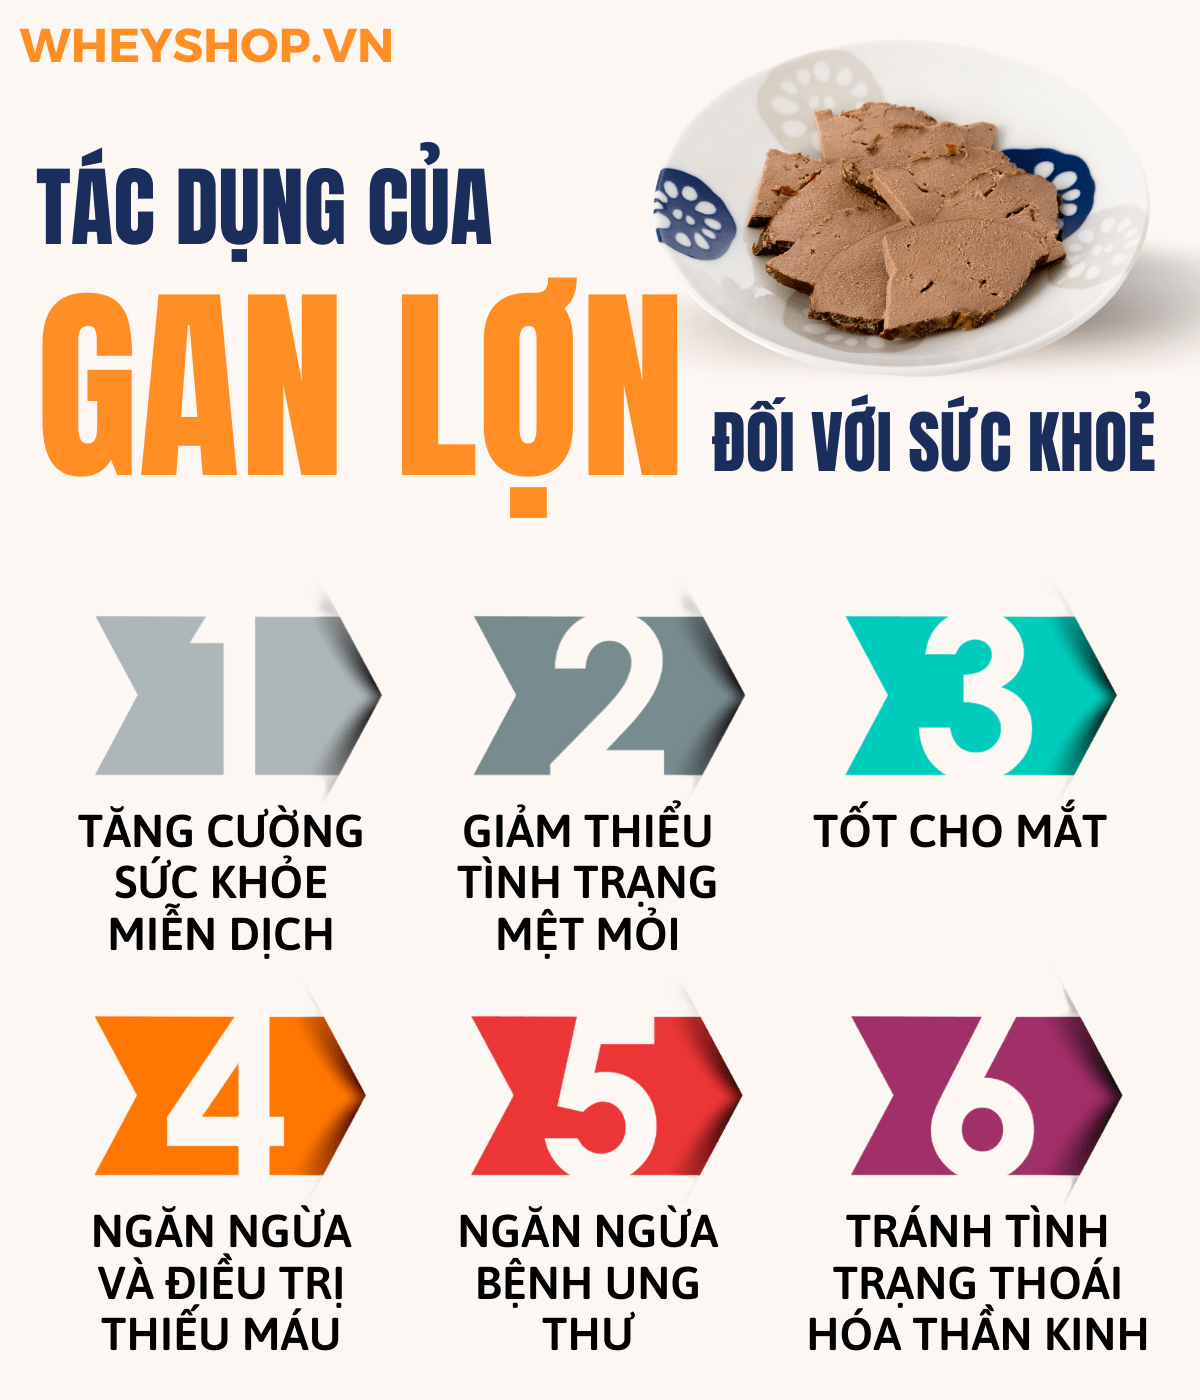 Gan động vật là một loại thực phẩm rất ngon và bổ dưỡng cho cơ thể được sử dụng nhiều trong bữa ăn hàng ngày của các gia đình Việt Nam. Gan lợn xào tỏi được...